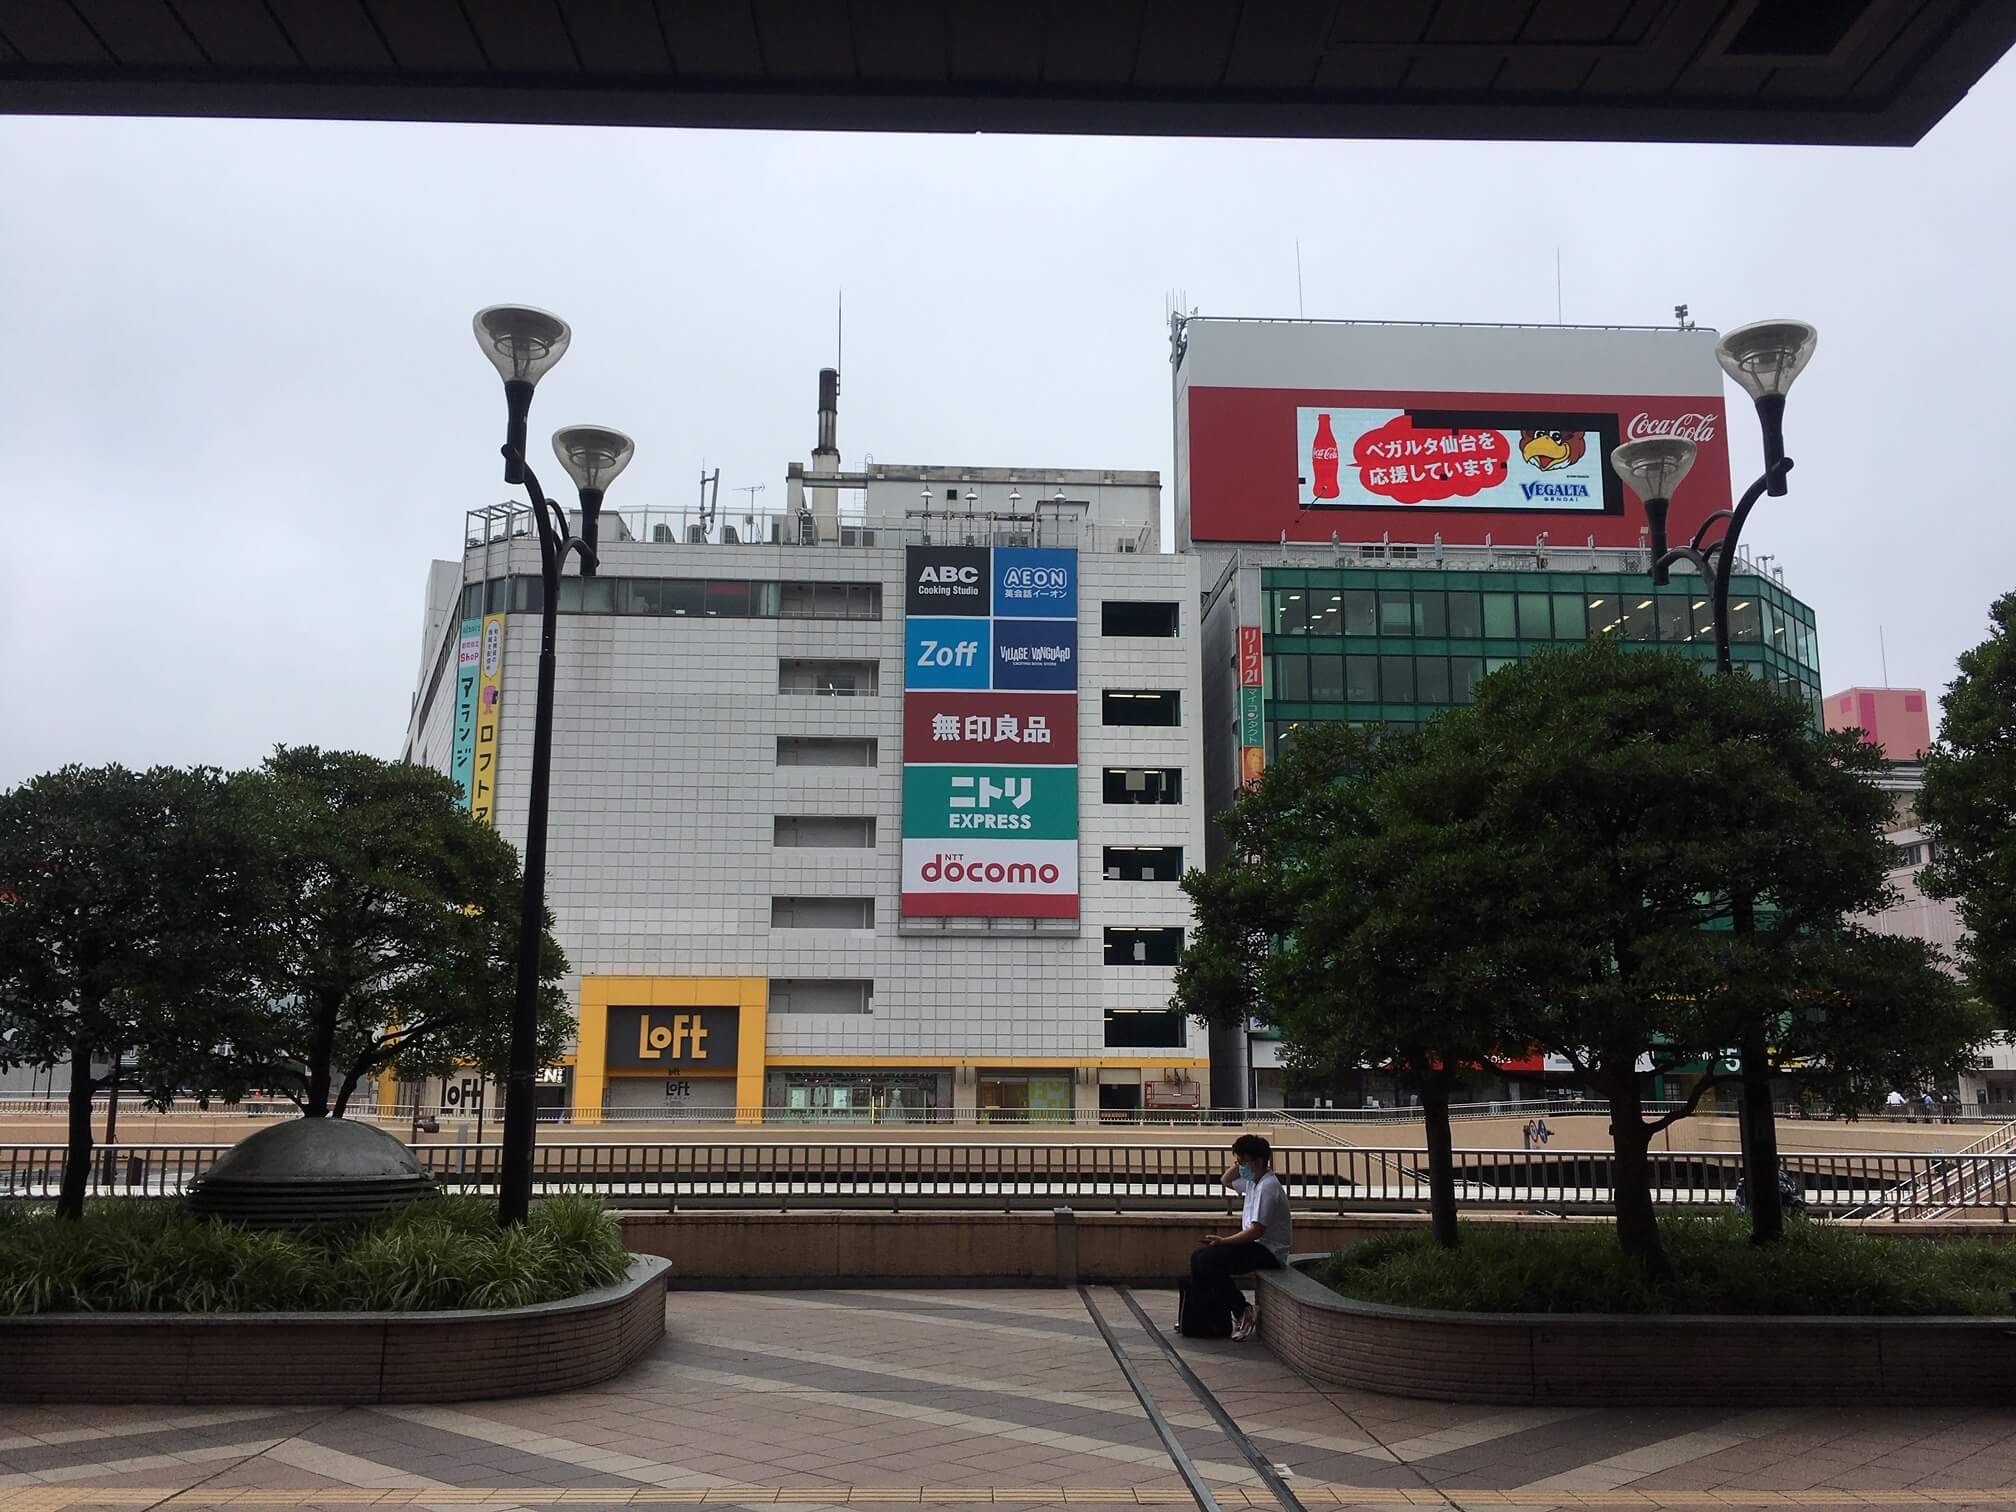 1. 仙台駅西口から出て右に(PARCO方面に)曲がります。